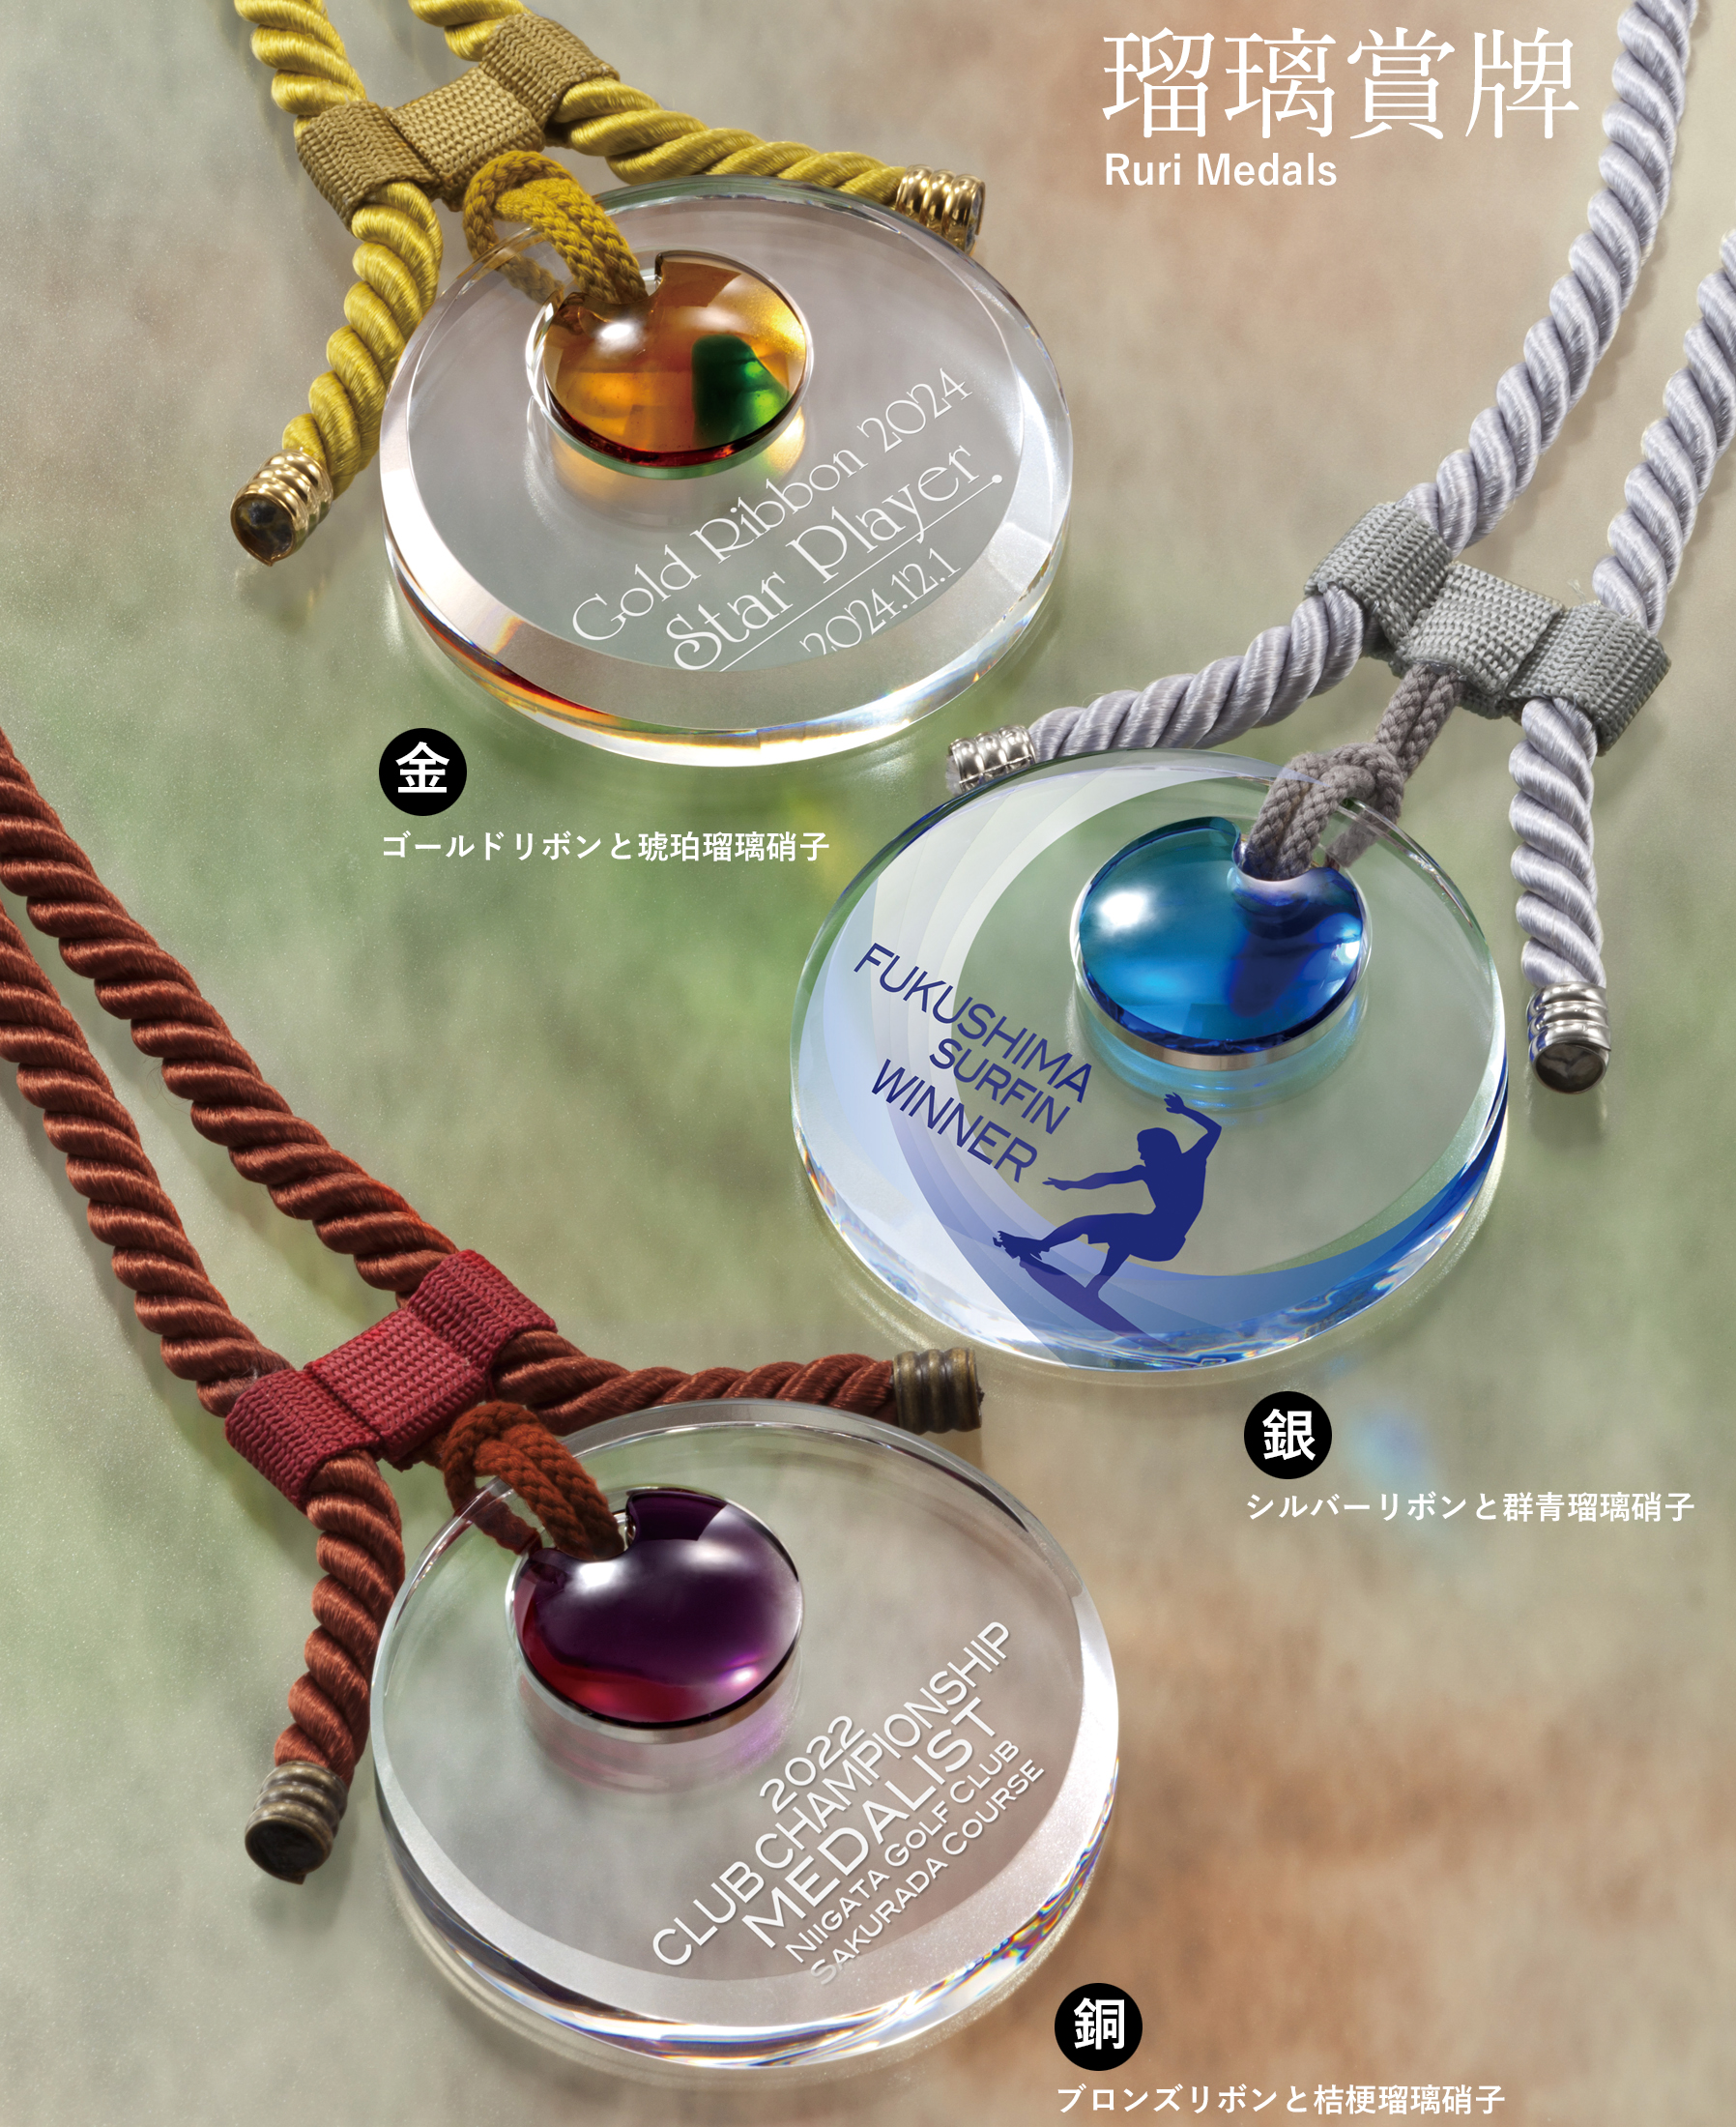 JA-ZNA-9041 瑠璃硝子を使った上質なオリジナルクリスタルセミオーダーメダル